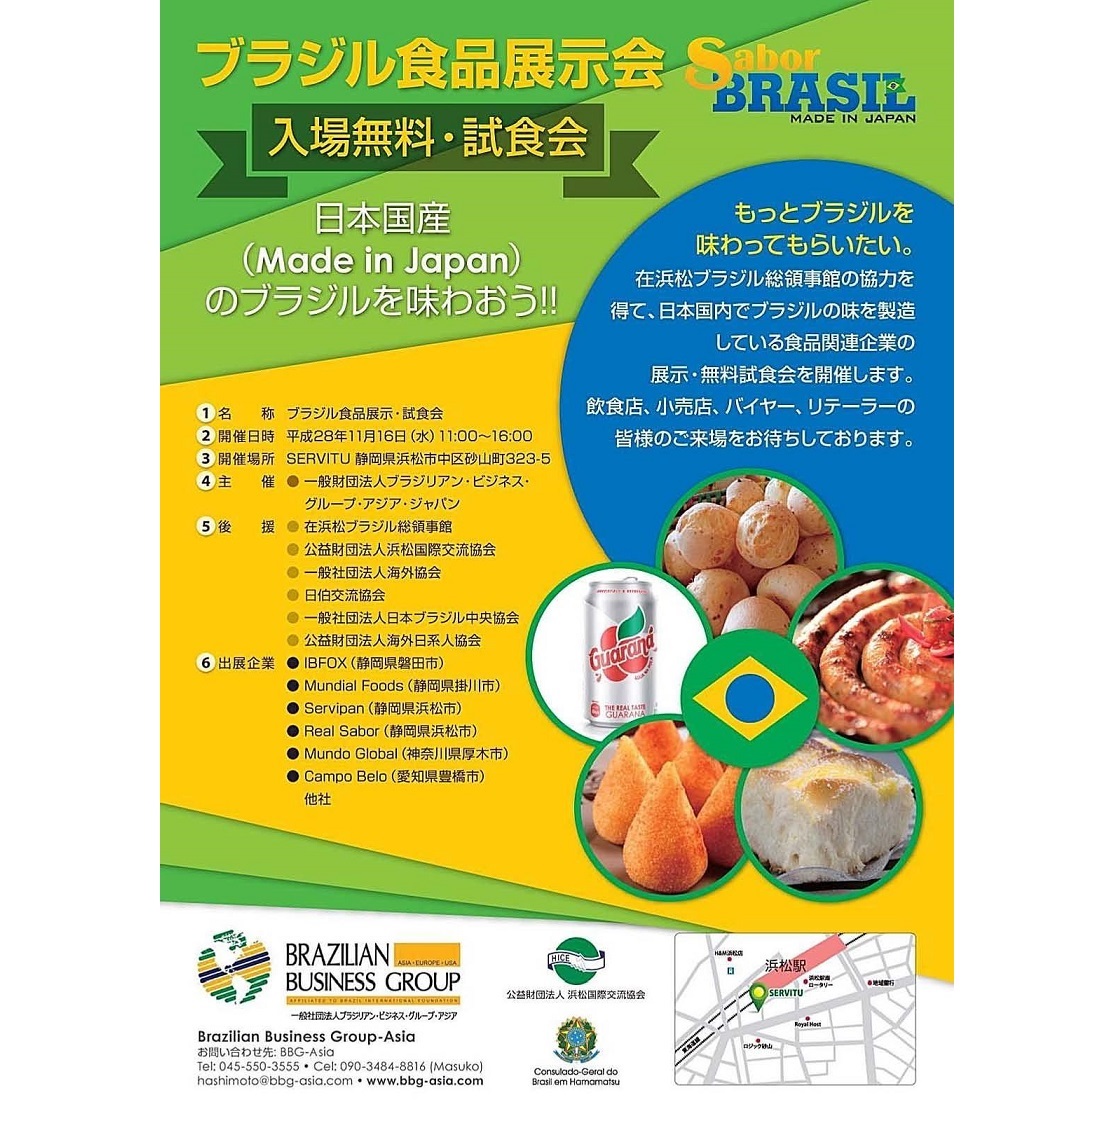 ブラジル食品試食展示会